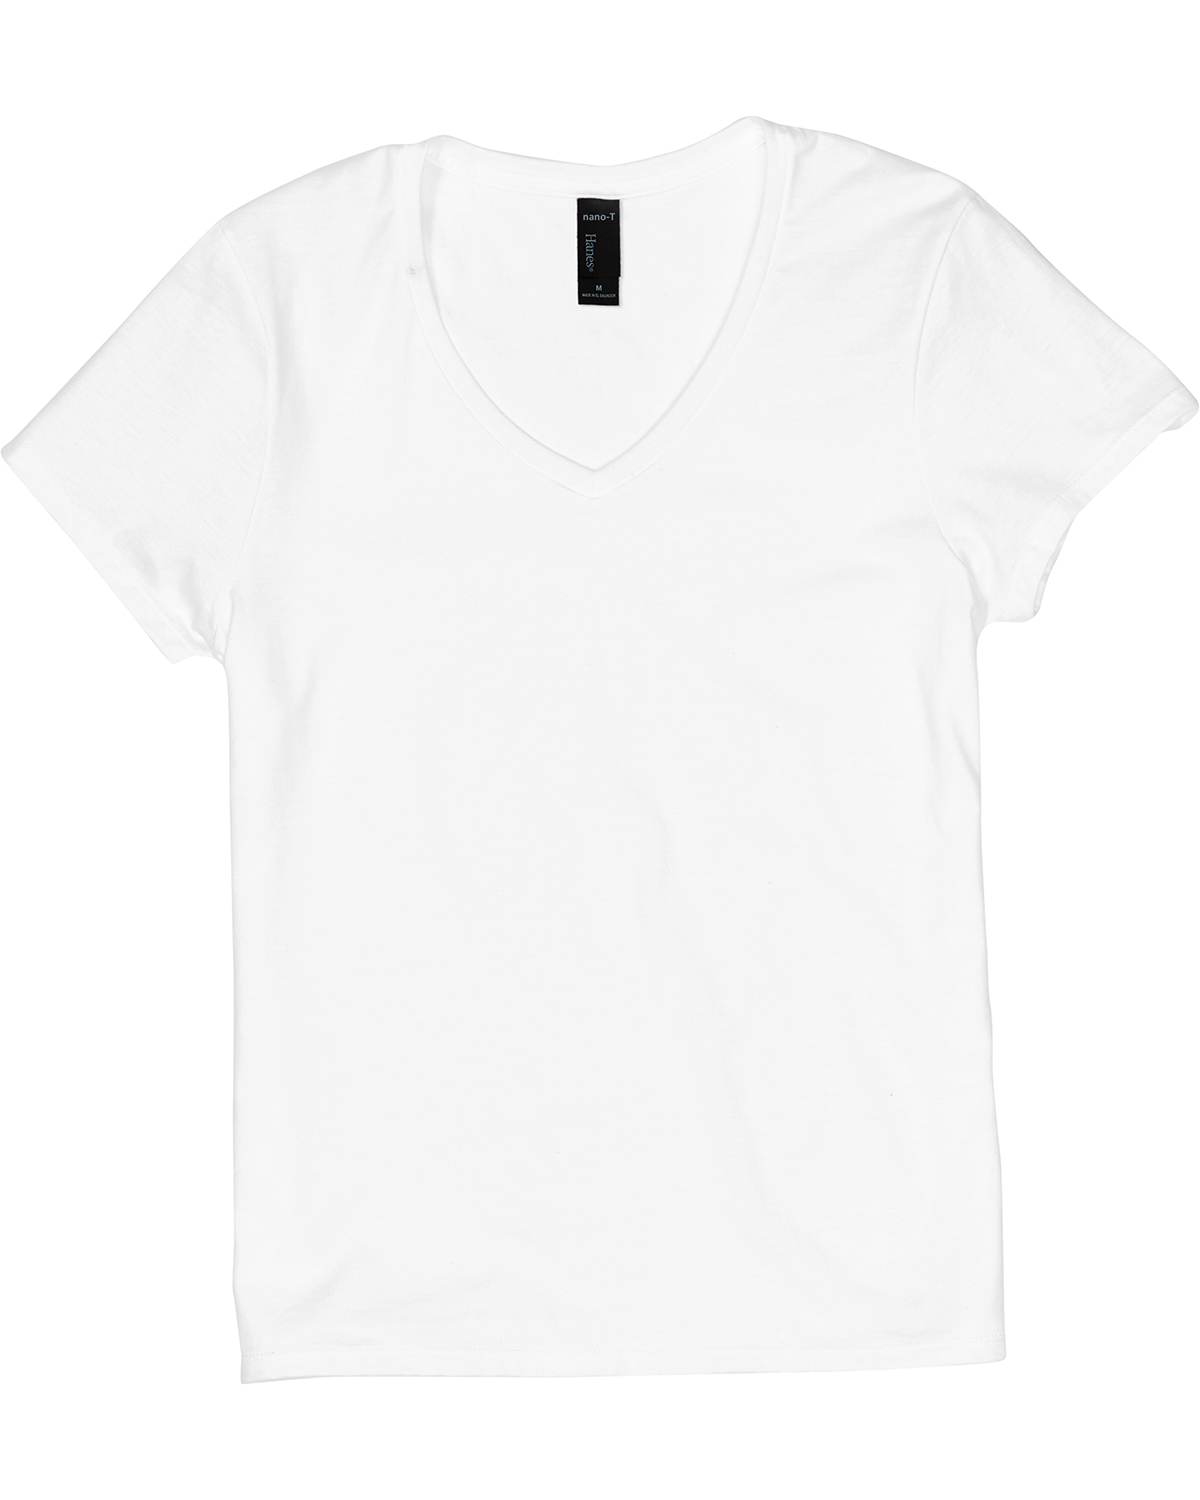 Hanes S04V - Ladies Nano-T Cotton V-Neck T-Shirt